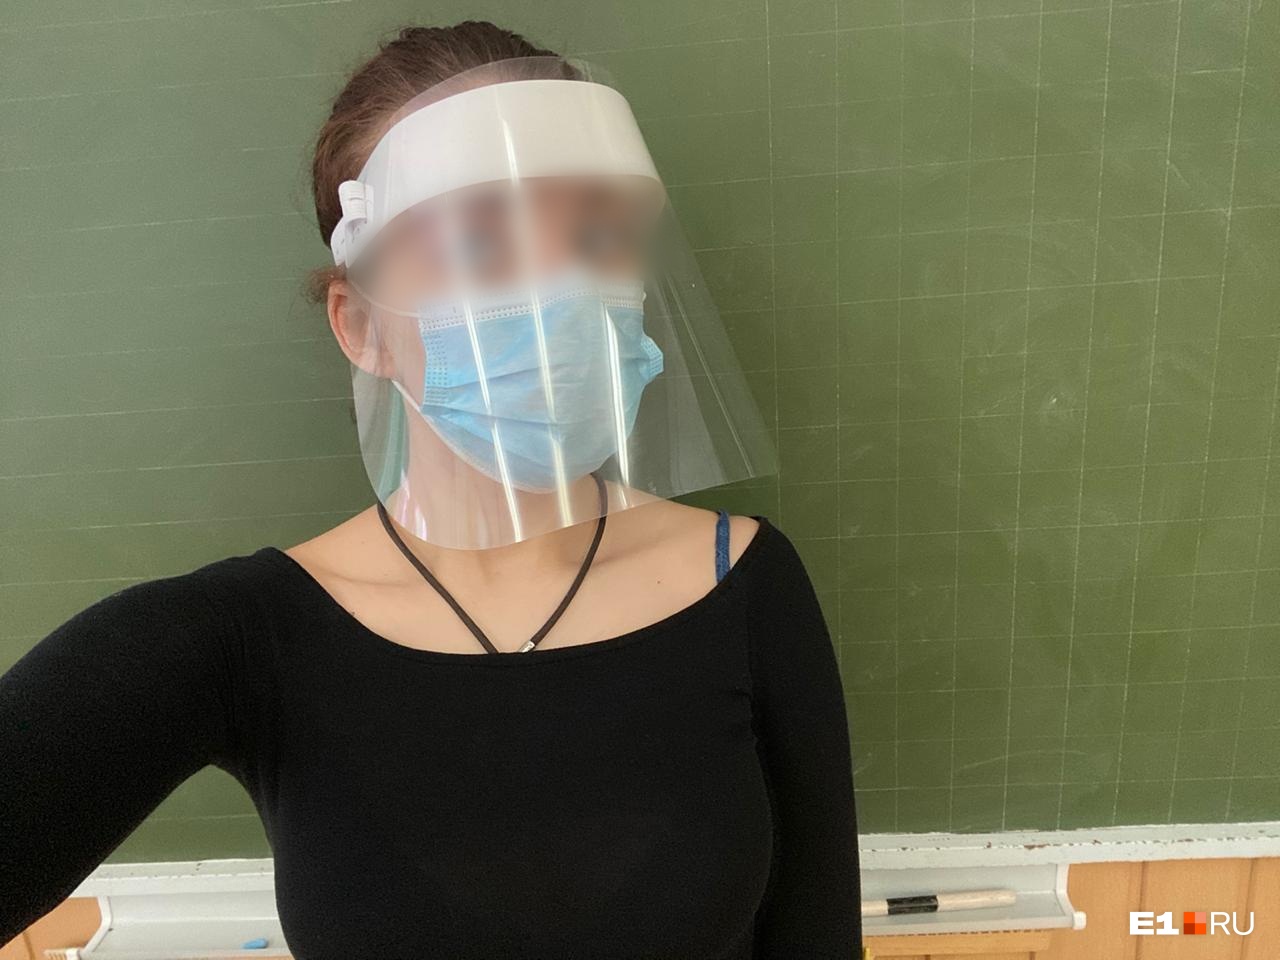 В Екатеринбурге учителям раздали лицевые экраны, чтобы защищаться от коронавируса